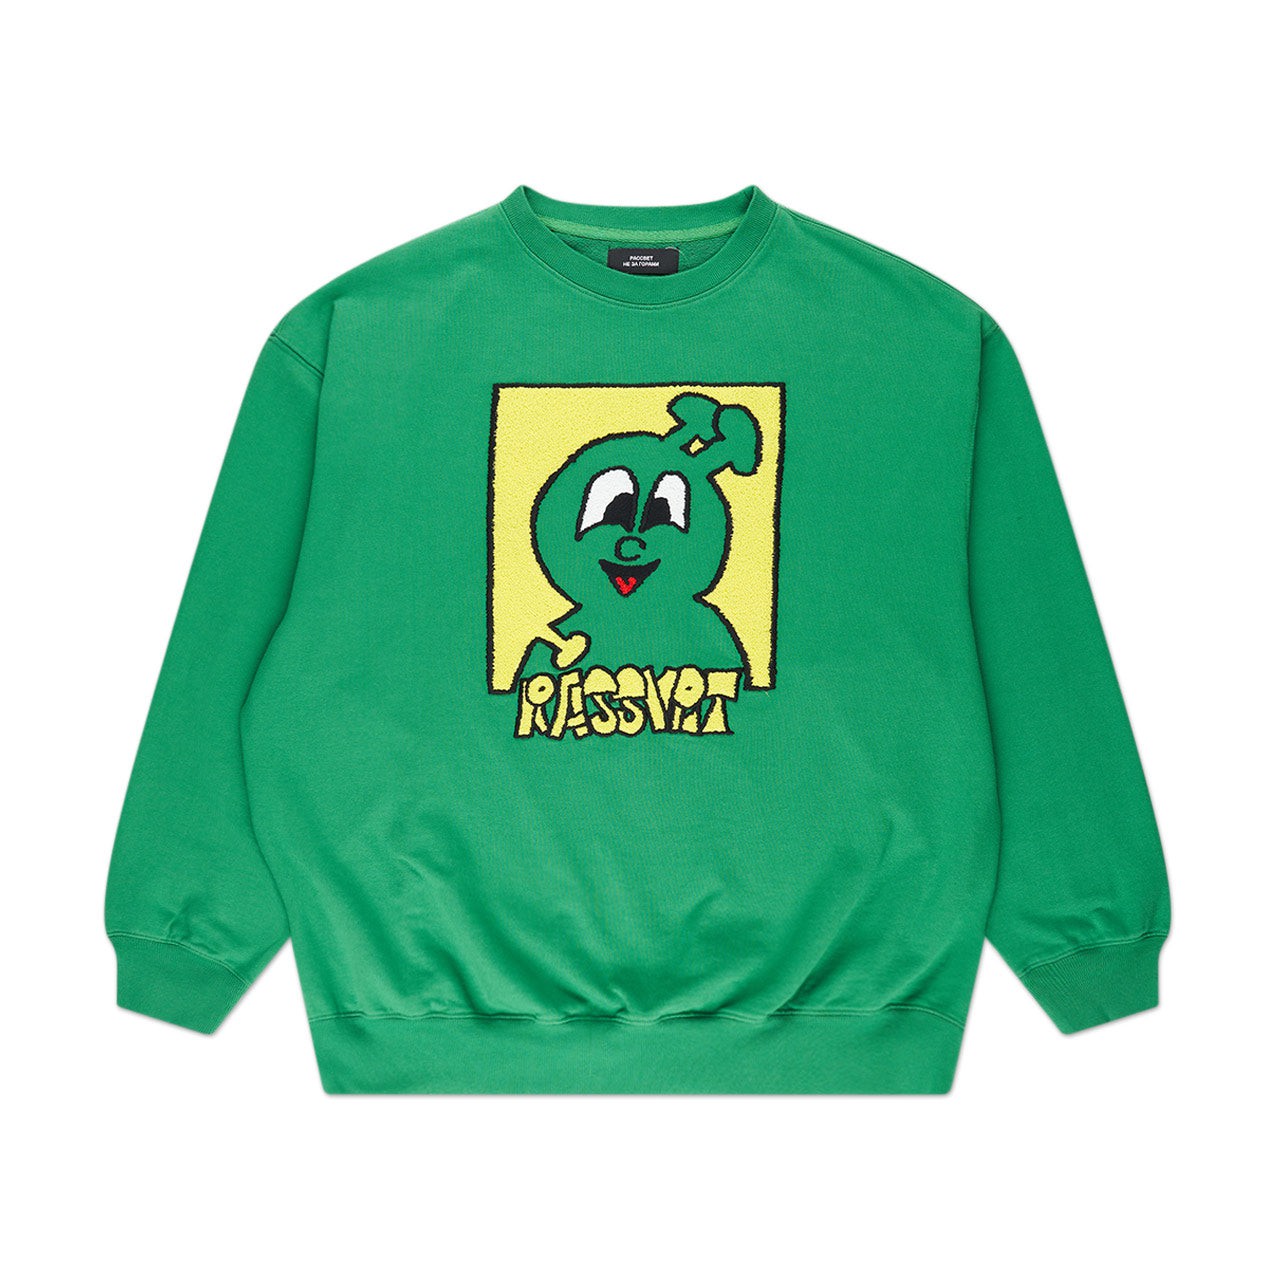 rassvet rassvet captek sweatshirt (green)